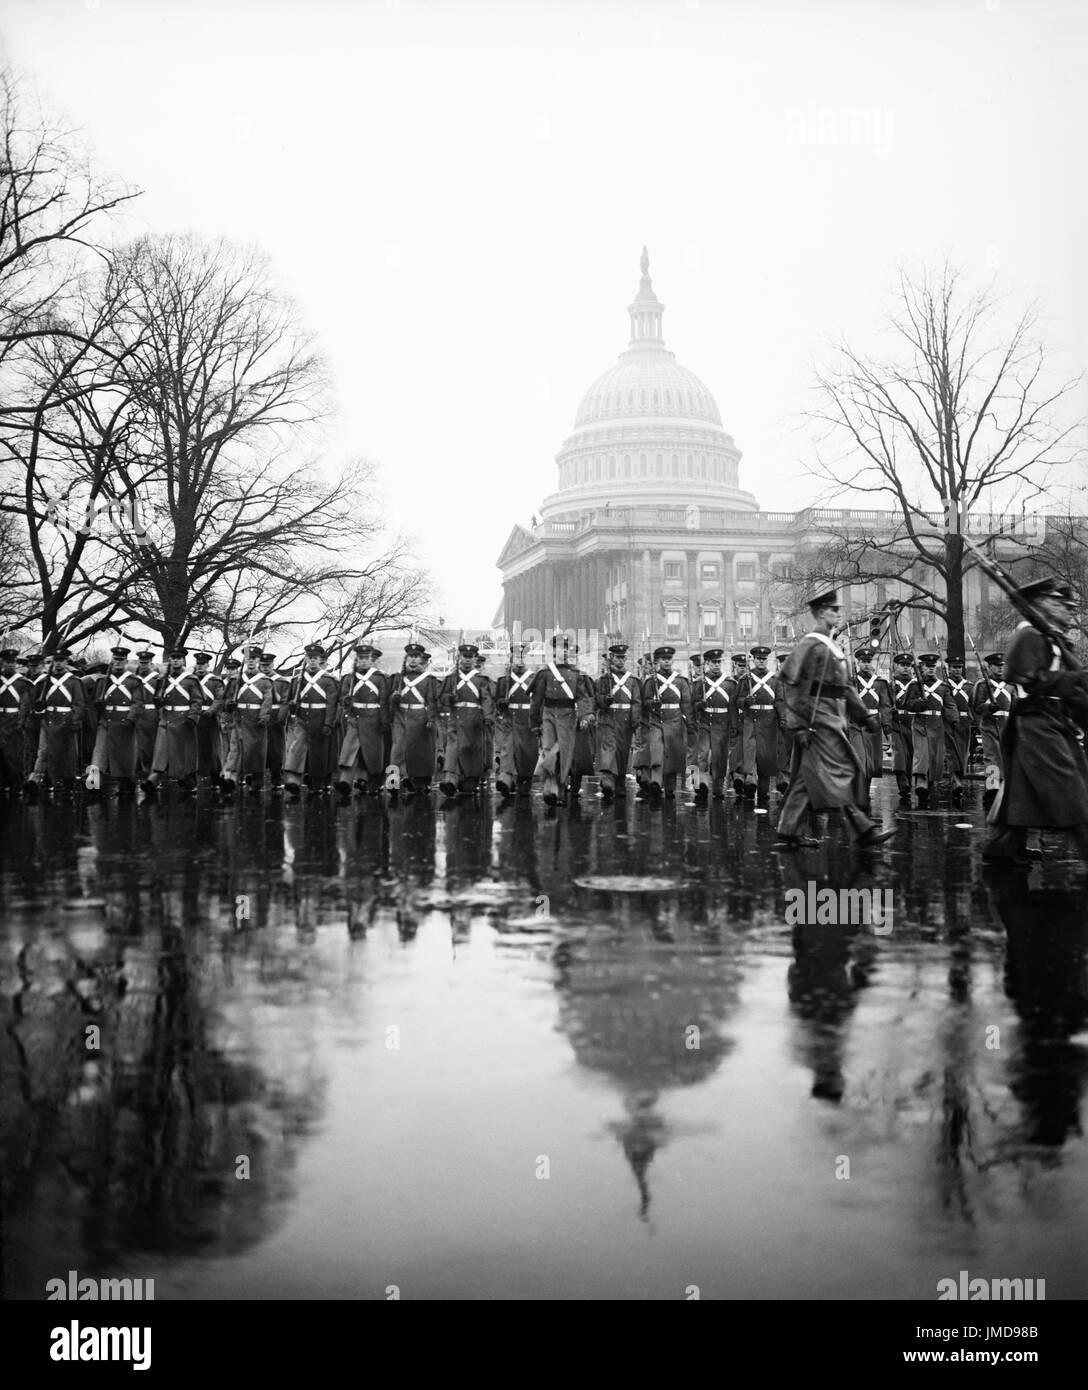 Punto ad ovest di cadetti marciando nella pioggia durante U.S. Il presidente Franklin Roosevelt Inaugurazione Parade, Washington DC, USA, Harris & Ewing, 20 Gennaio 1937 Foto Stock